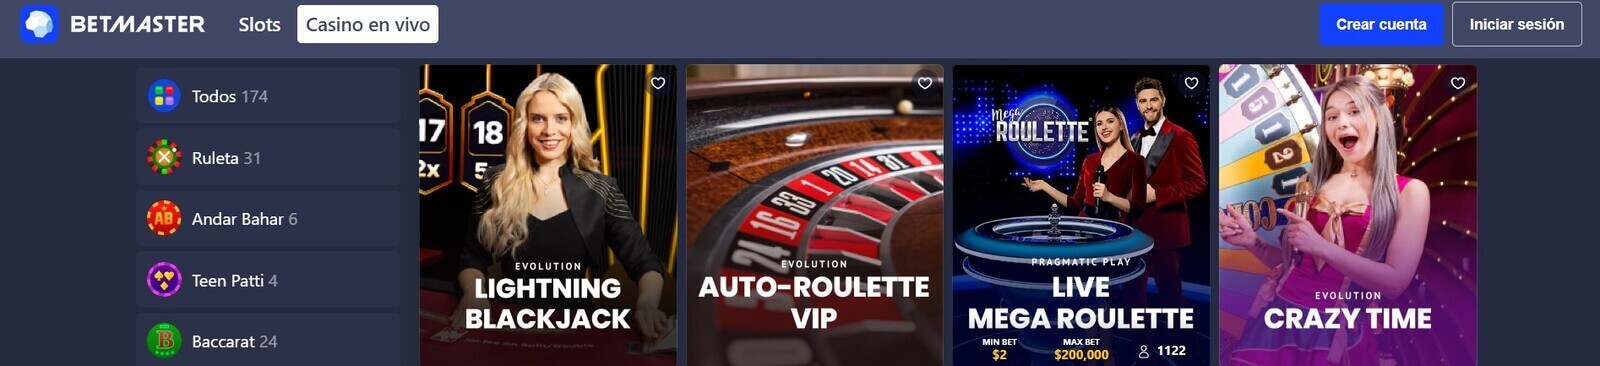 Juegos de Casino en vivo de Betmaster Casino online